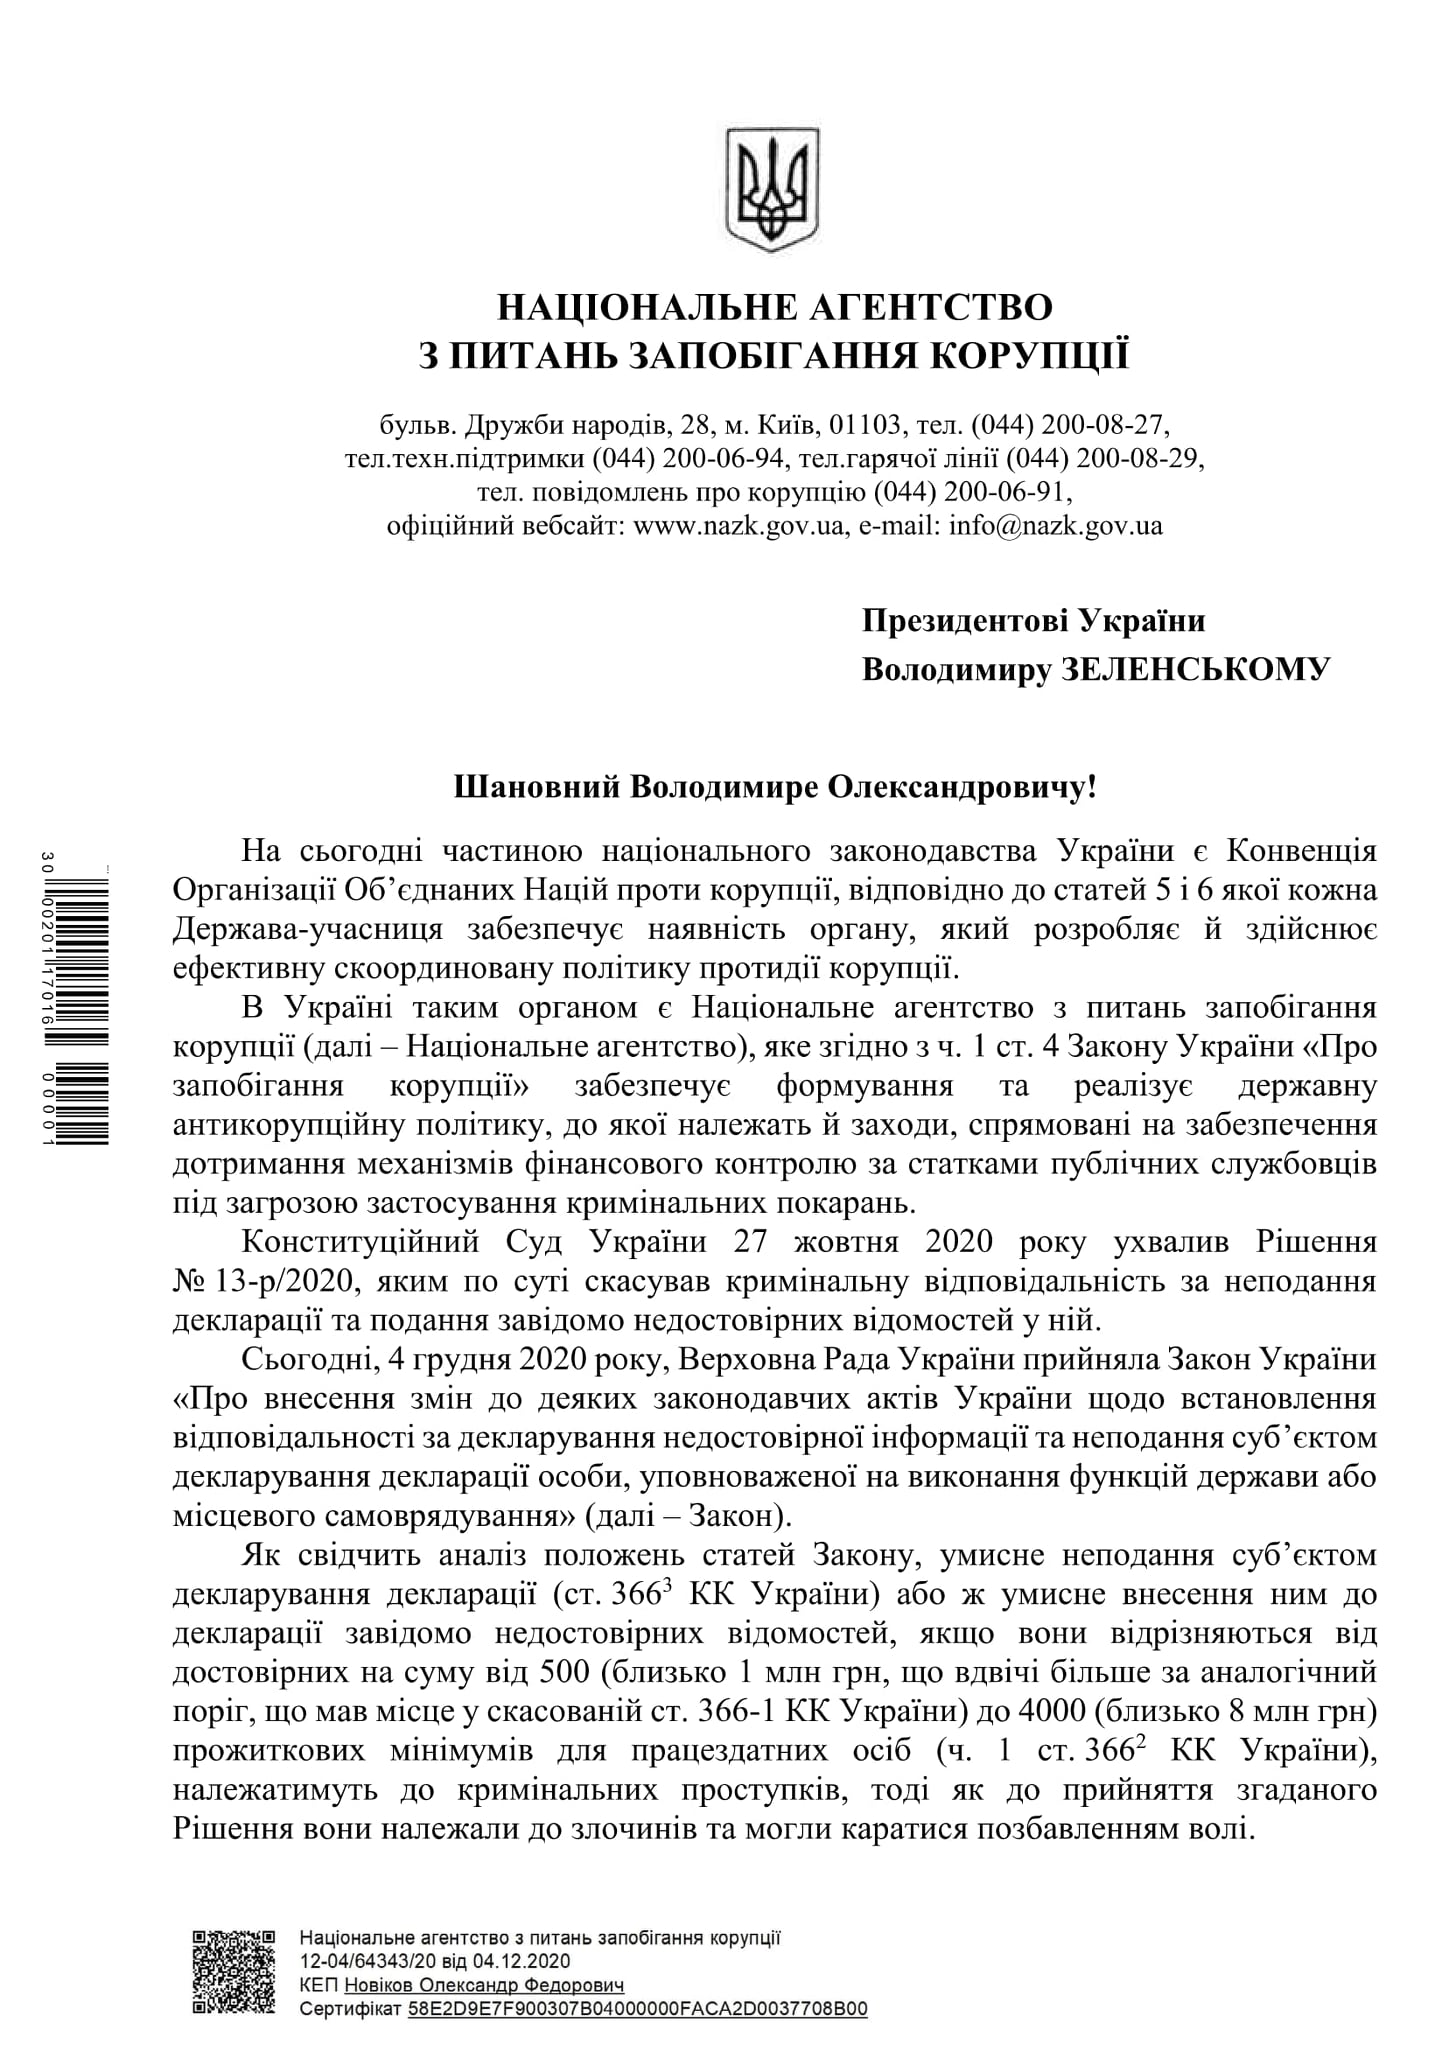 НАПК просит Зеленского ветировать законопроект о е-декларациях. Скан: НАПК